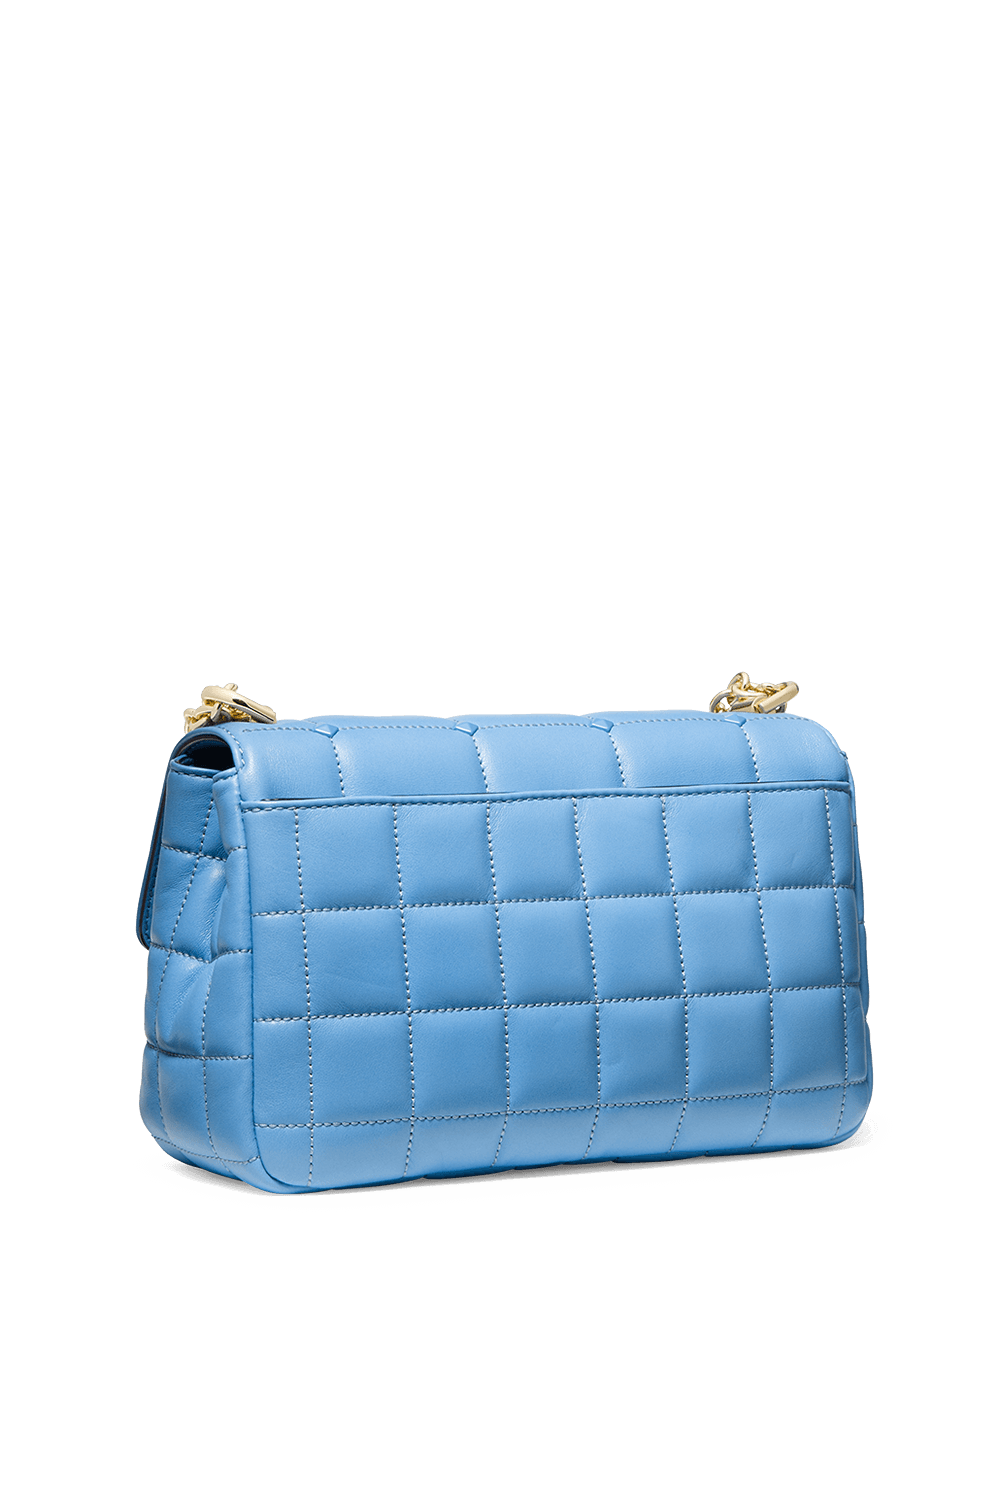 Soho LG Studded Quilted Leather Shoulder Bag in Soft Blue MICHAEL KORS